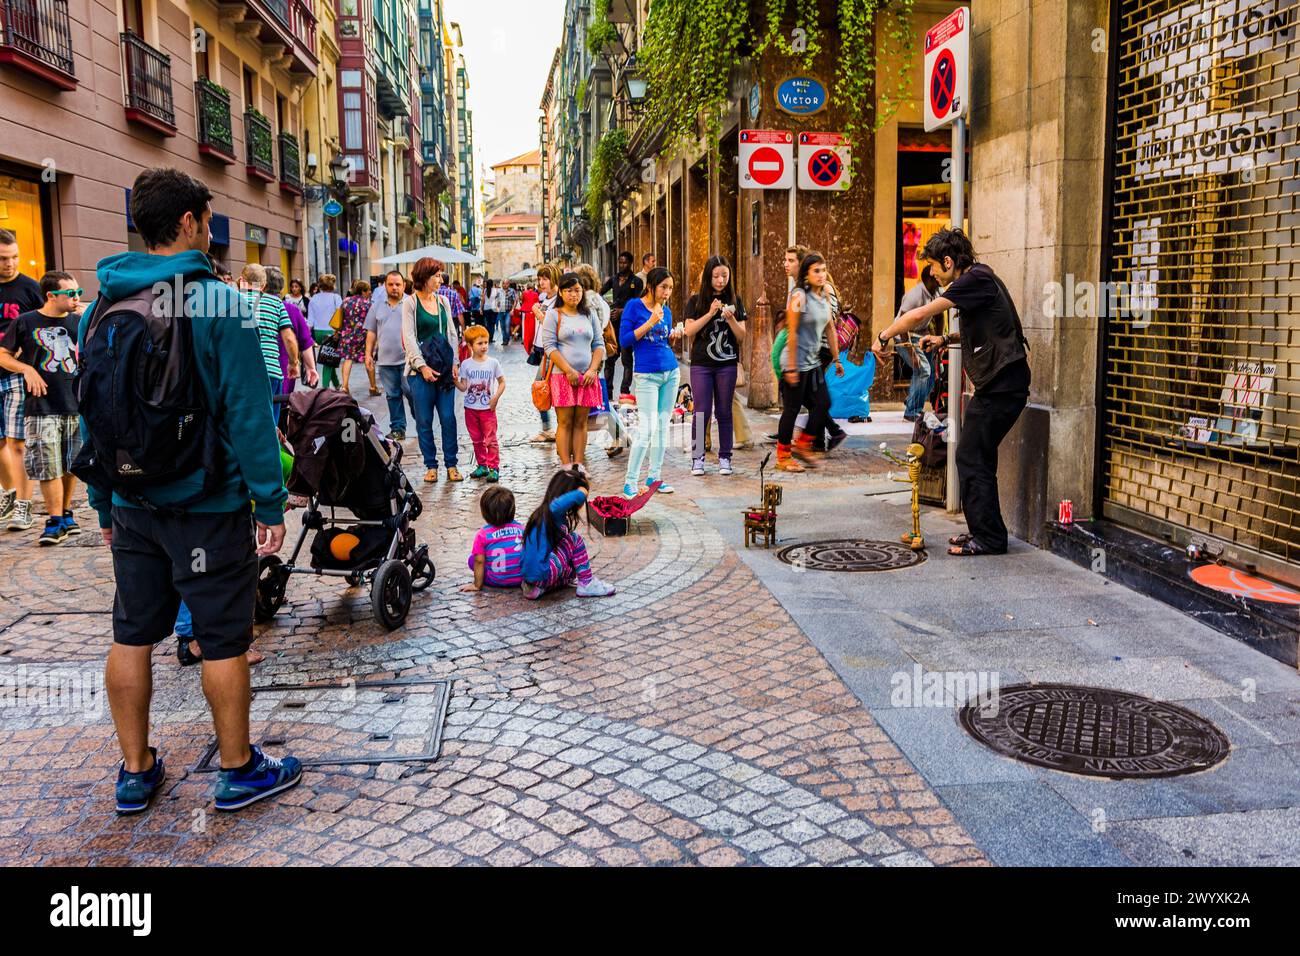 Las Siete Calles oder Casco Viejo auf Spanisch oder Zazpikaleak oder ALDE Zaharra auf Baskisch sind verschiedene Namen für das mittelalterliche Viertel Bilbao Stockfoto